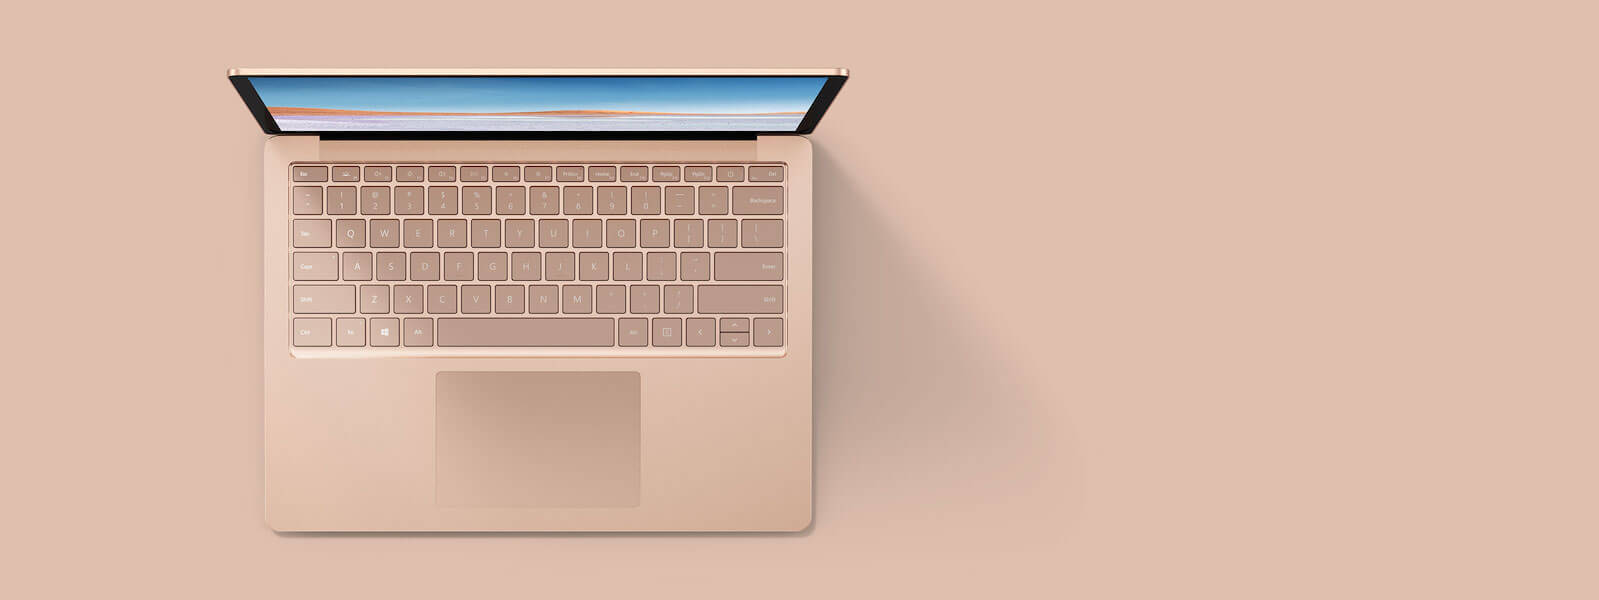 砂岩金 13.5 英寸 Surface Laptop 3 俯视图